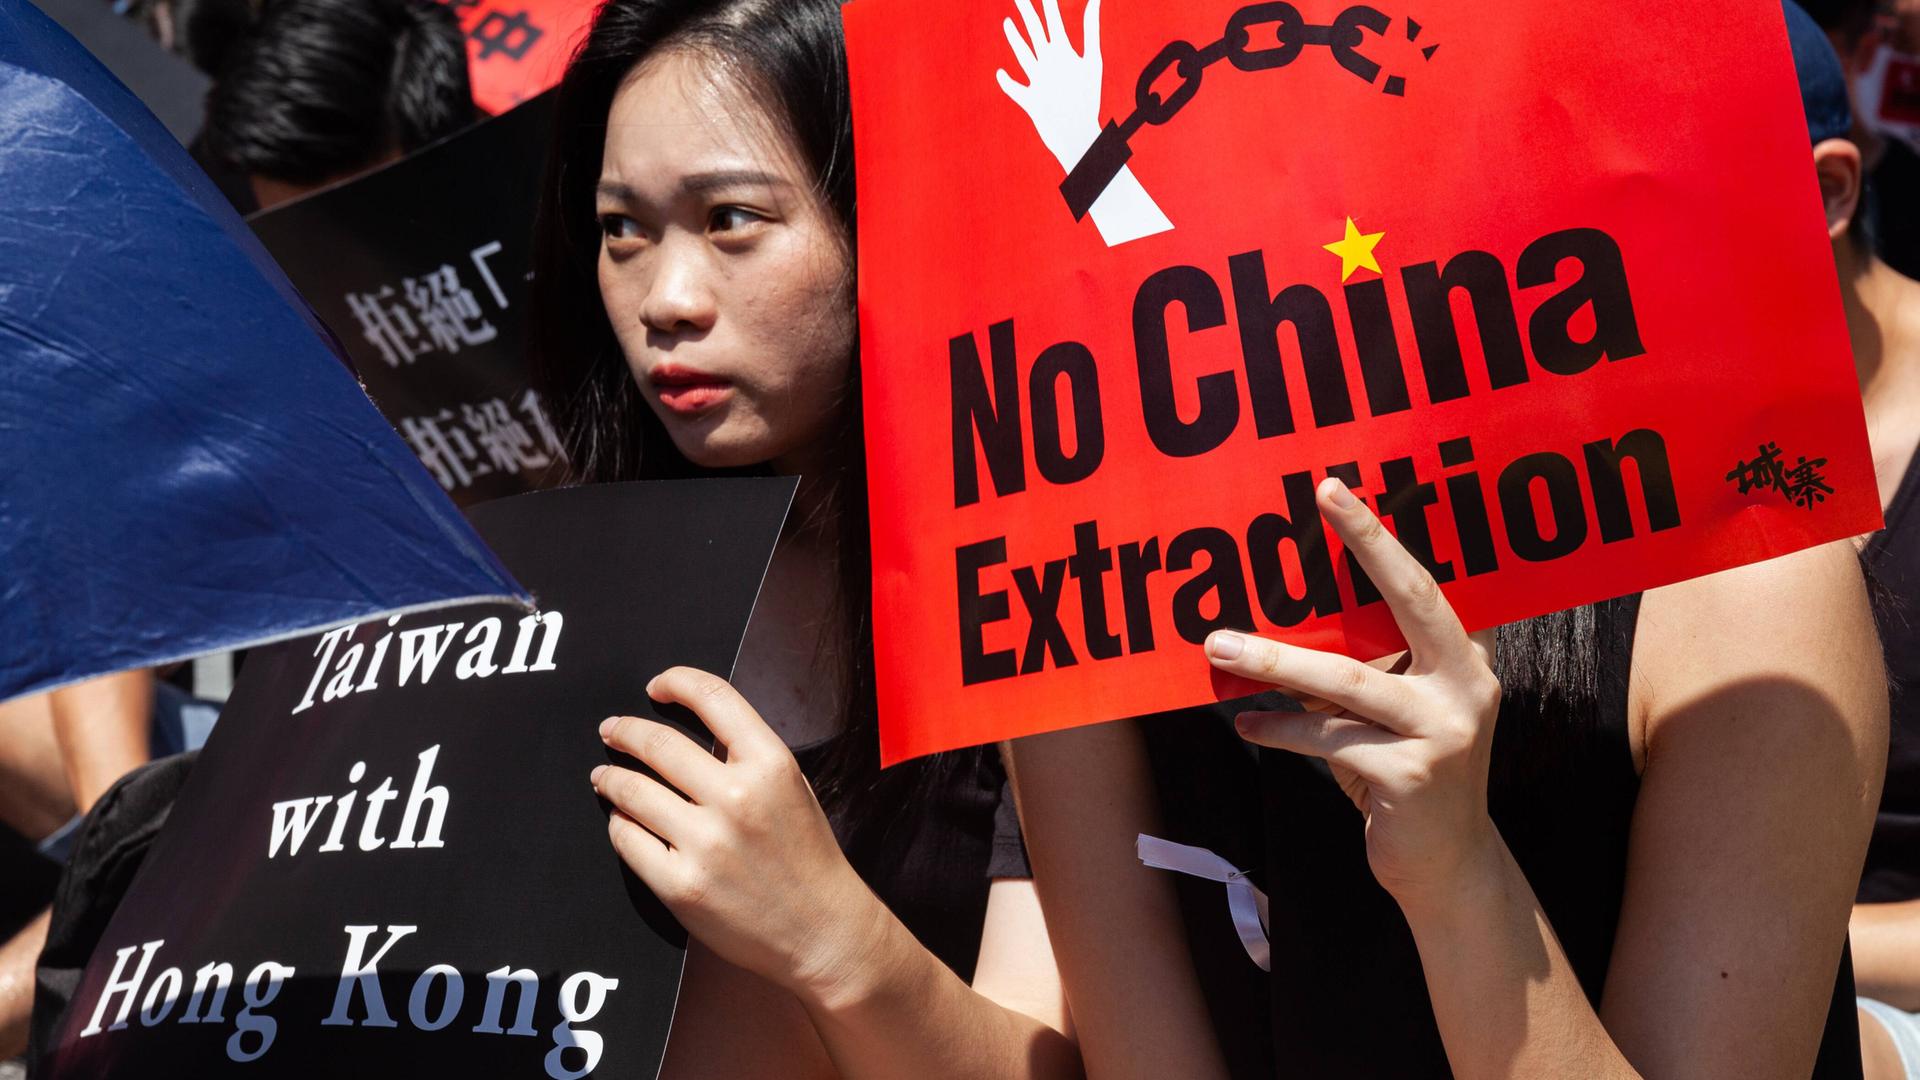 Eine junge Frau hält ein Plakat mit der Aufschrift "Taiwan with Hong Kong", eine andere eins mit "No China Extradition" bei einer Kundgebung in Taipeh, Taiwan, am 16.06.2019